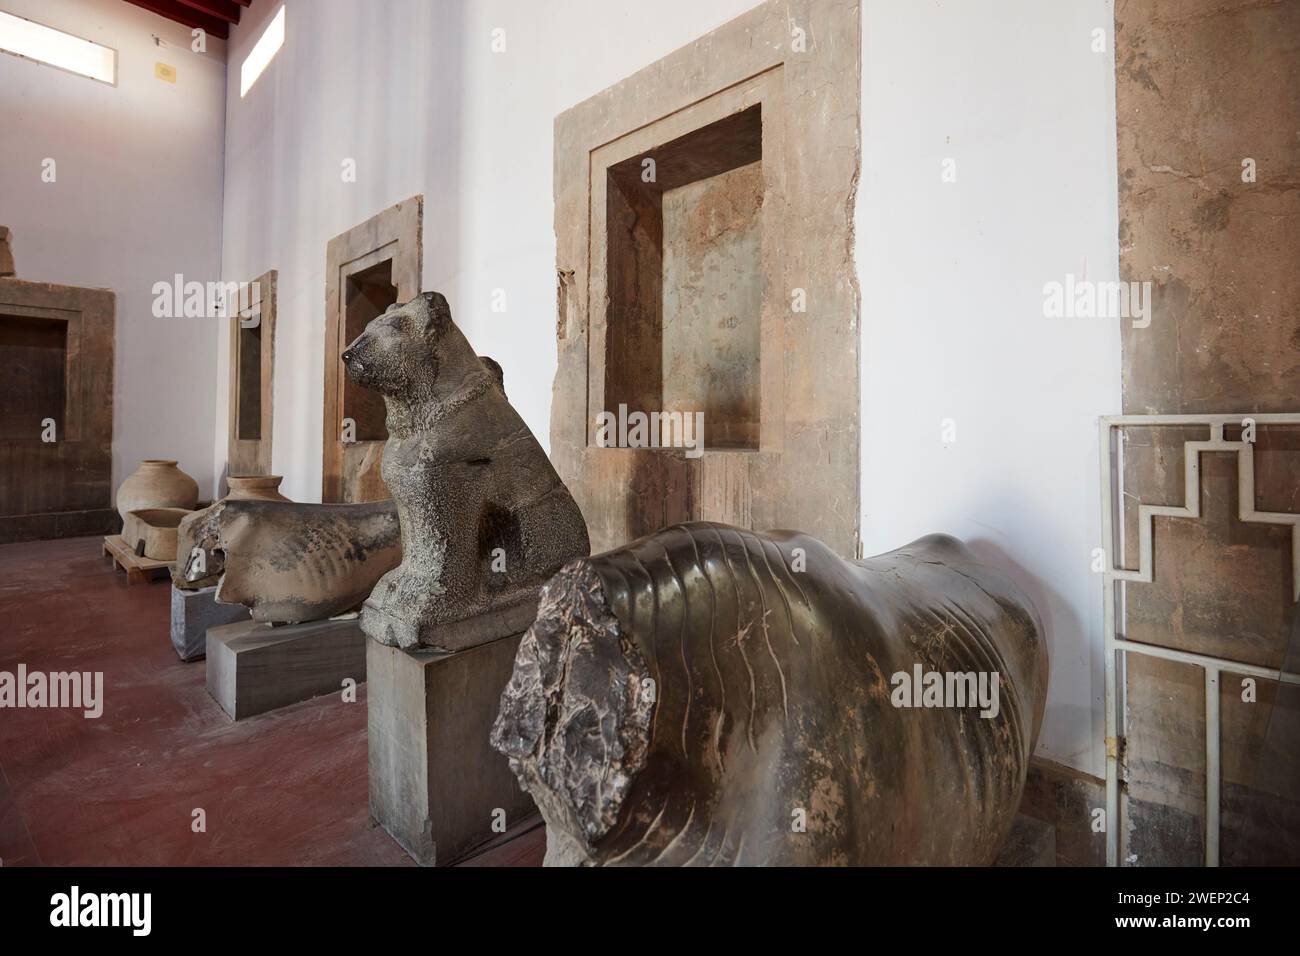 Statues de pierre anciennes trouvées à Persépolis et exposées dans le musée de Persépolis. Persépolis, province de Fars, Iran. Banque D'Images